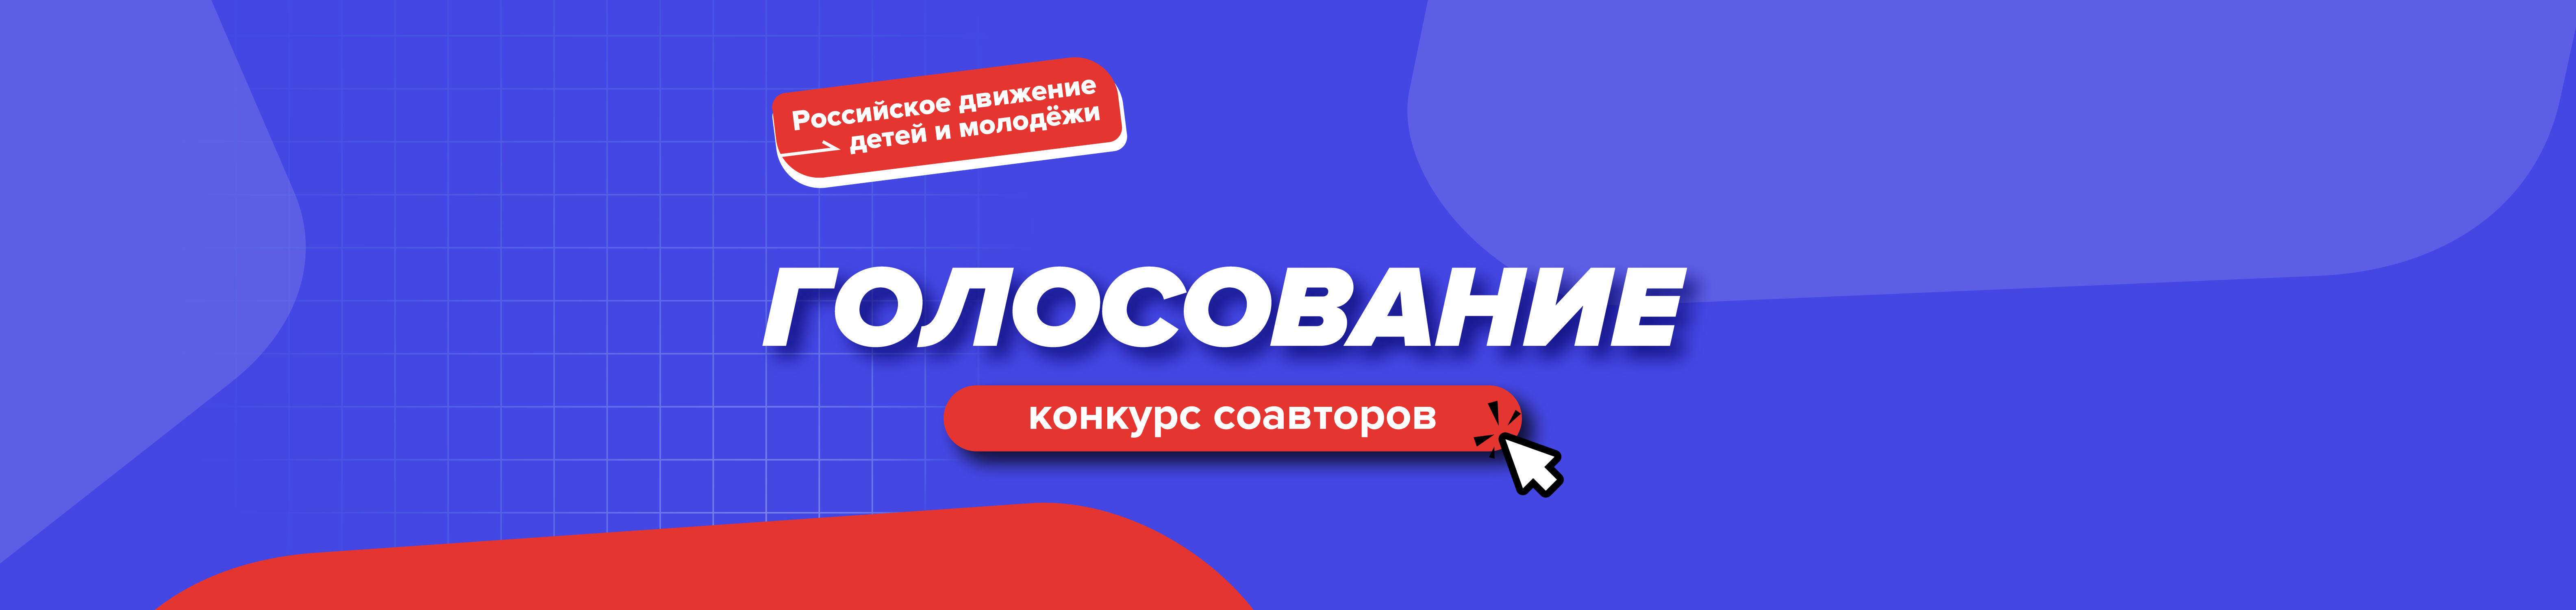 Голосование Всероссийского конкурса соавторов Российского движения детей и молодёжи